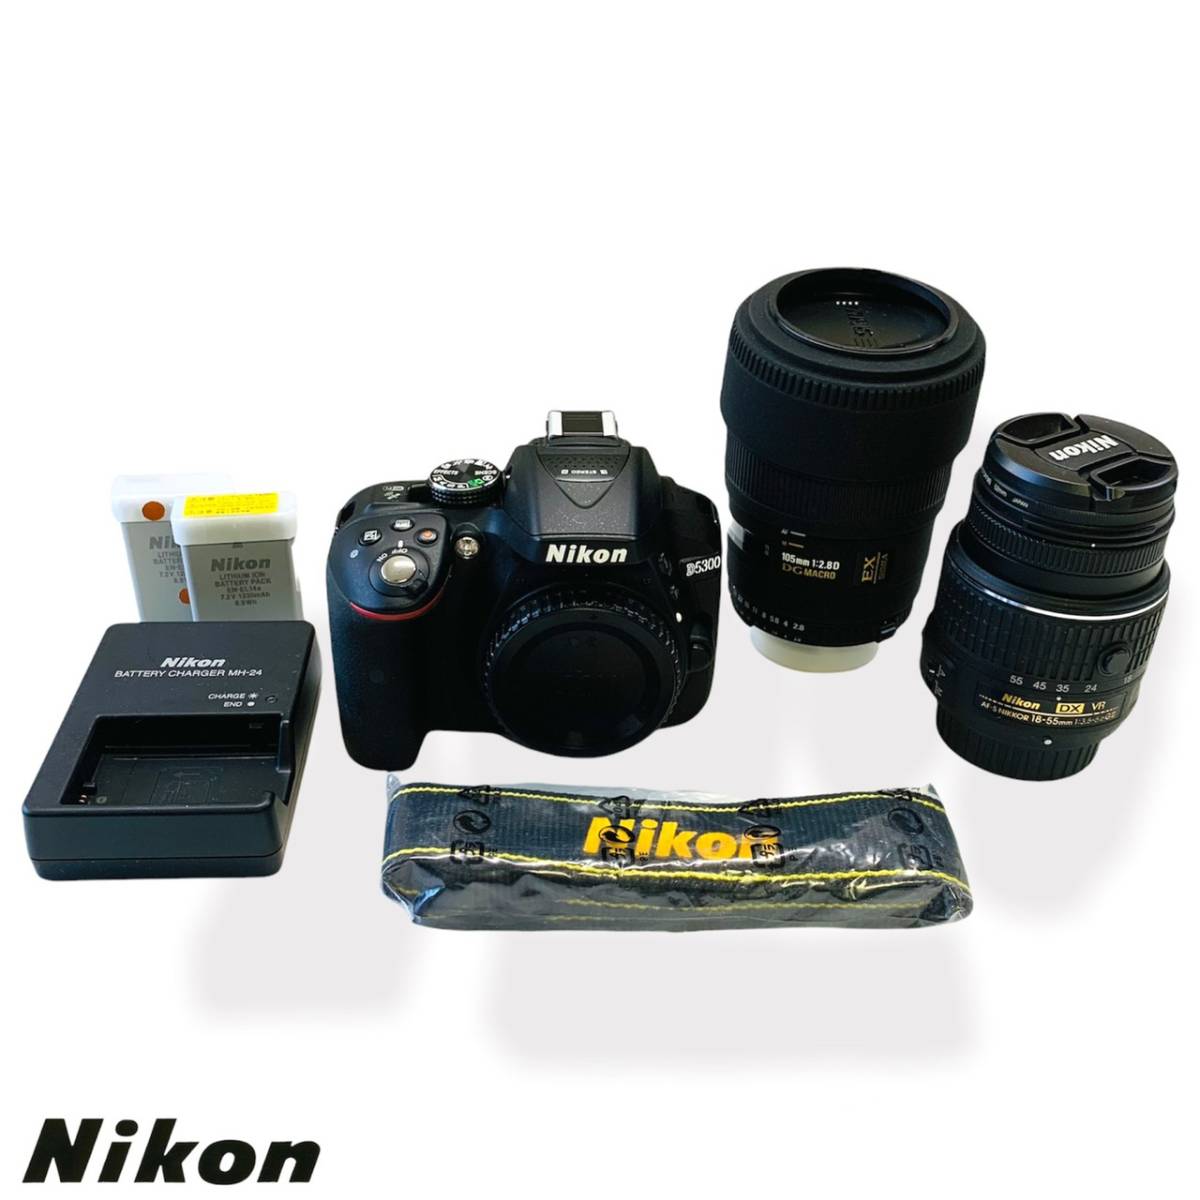 Nikon D5300 【レンズ&バッテリー付き】 カメラ デジタルカメラ www